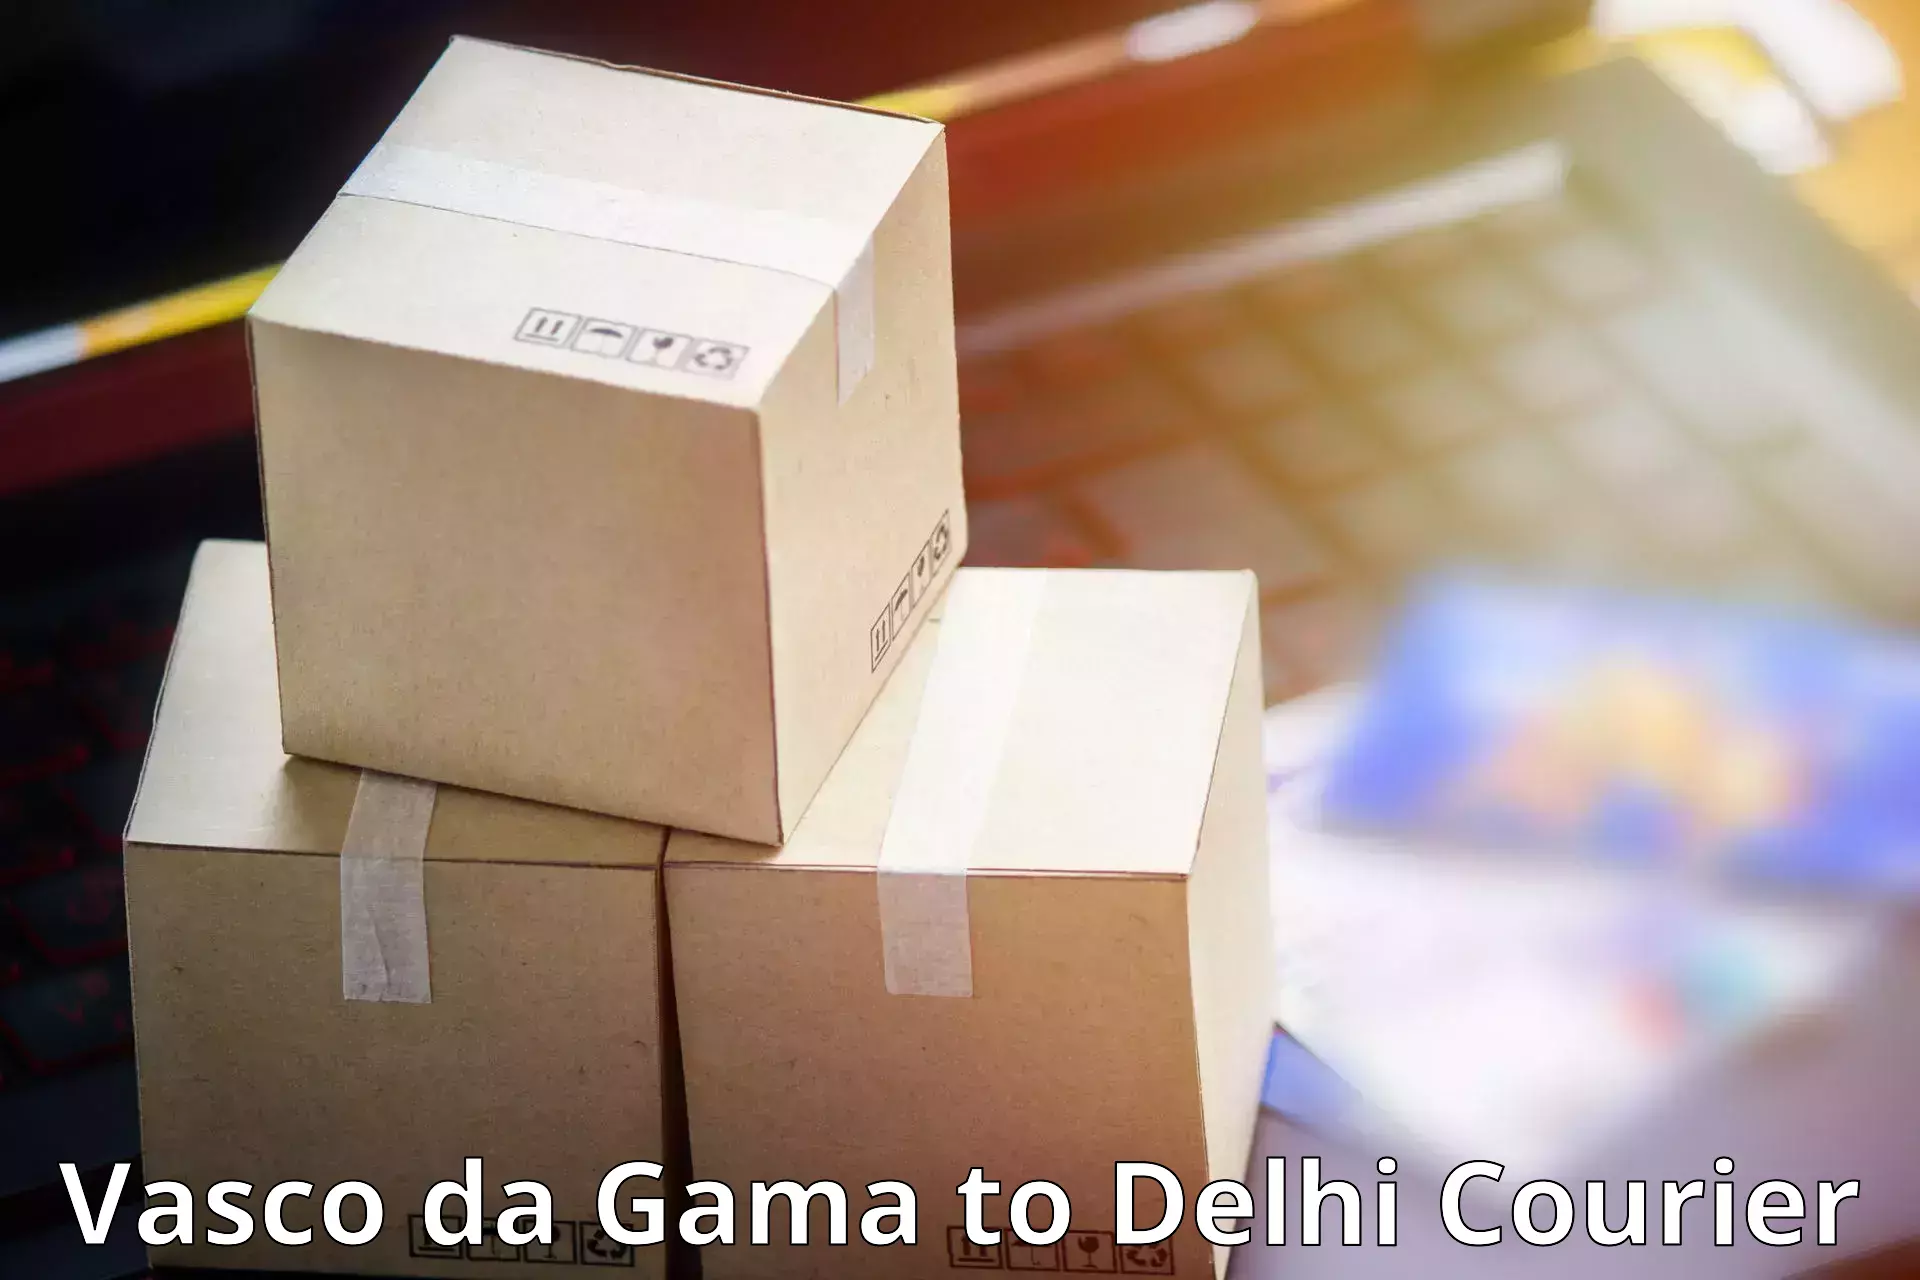 Courier service comparison Vasco da Gama to University of Delhi